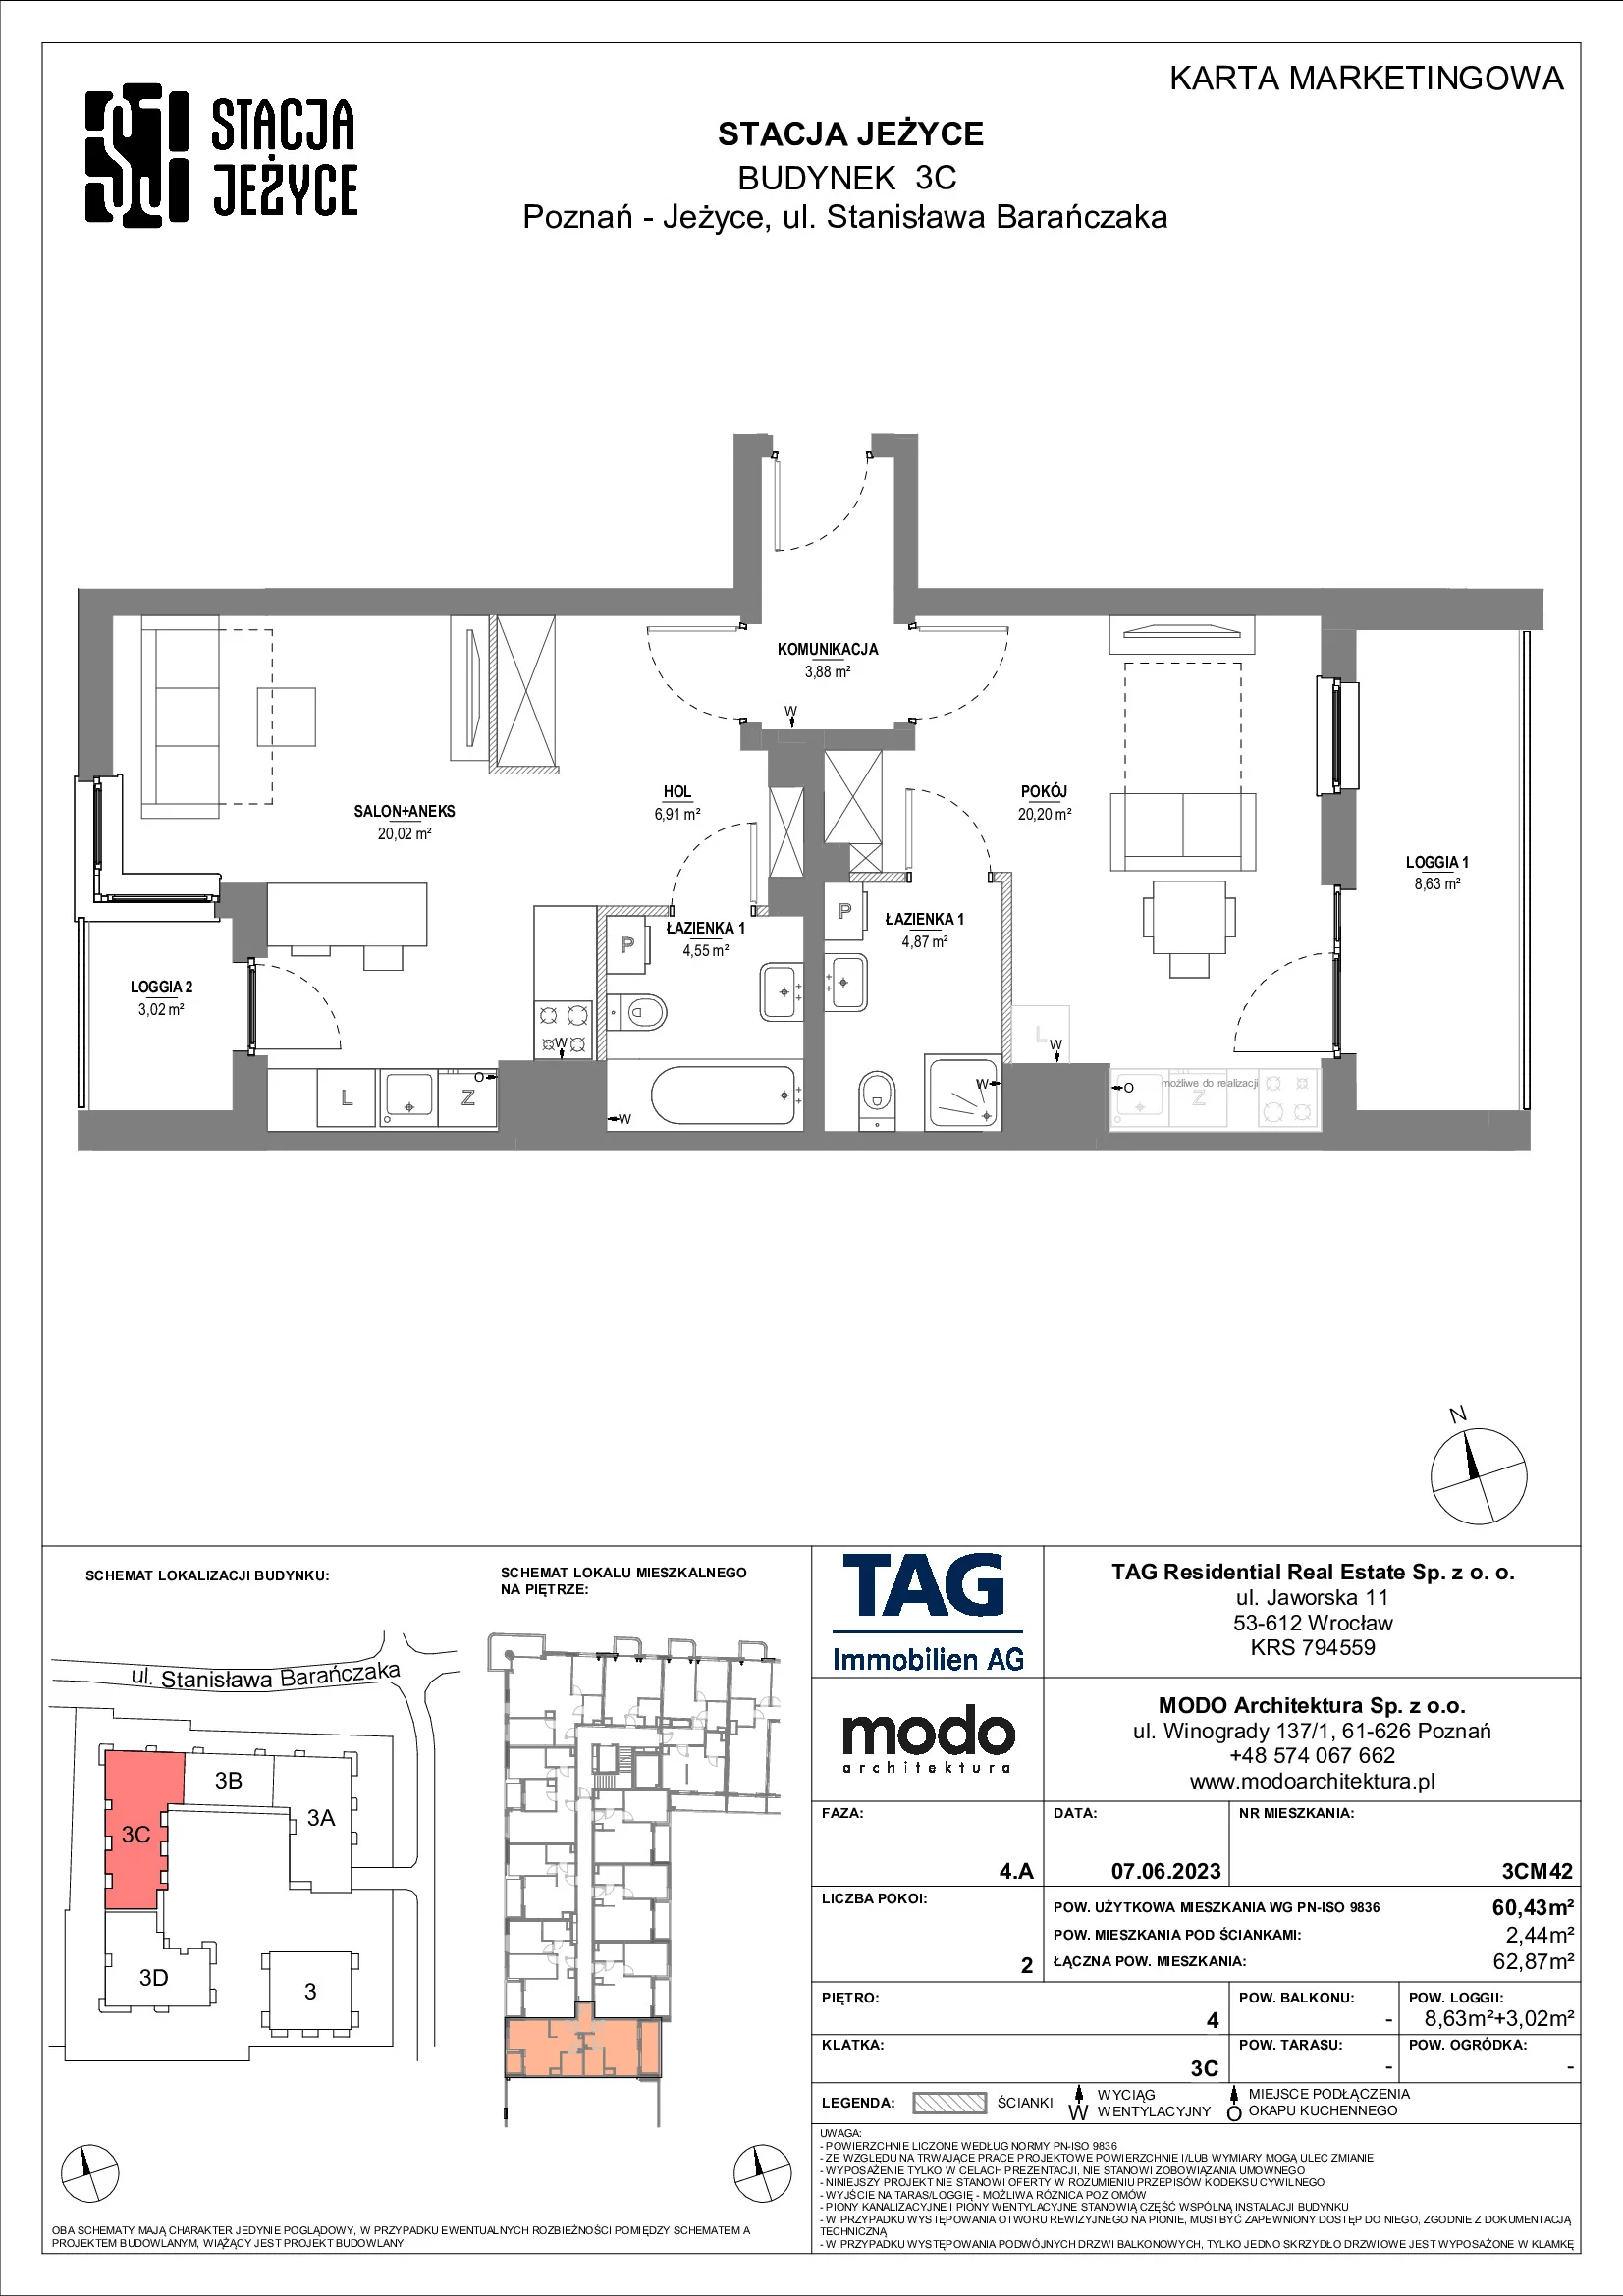 Mieszkanie 60,43 m², piętro 4, oferta nr 3CM42, Stacja Jeżyce, Poznań, Jeżyce, Jeżyce, ul. Stanisława Barańczaka 3